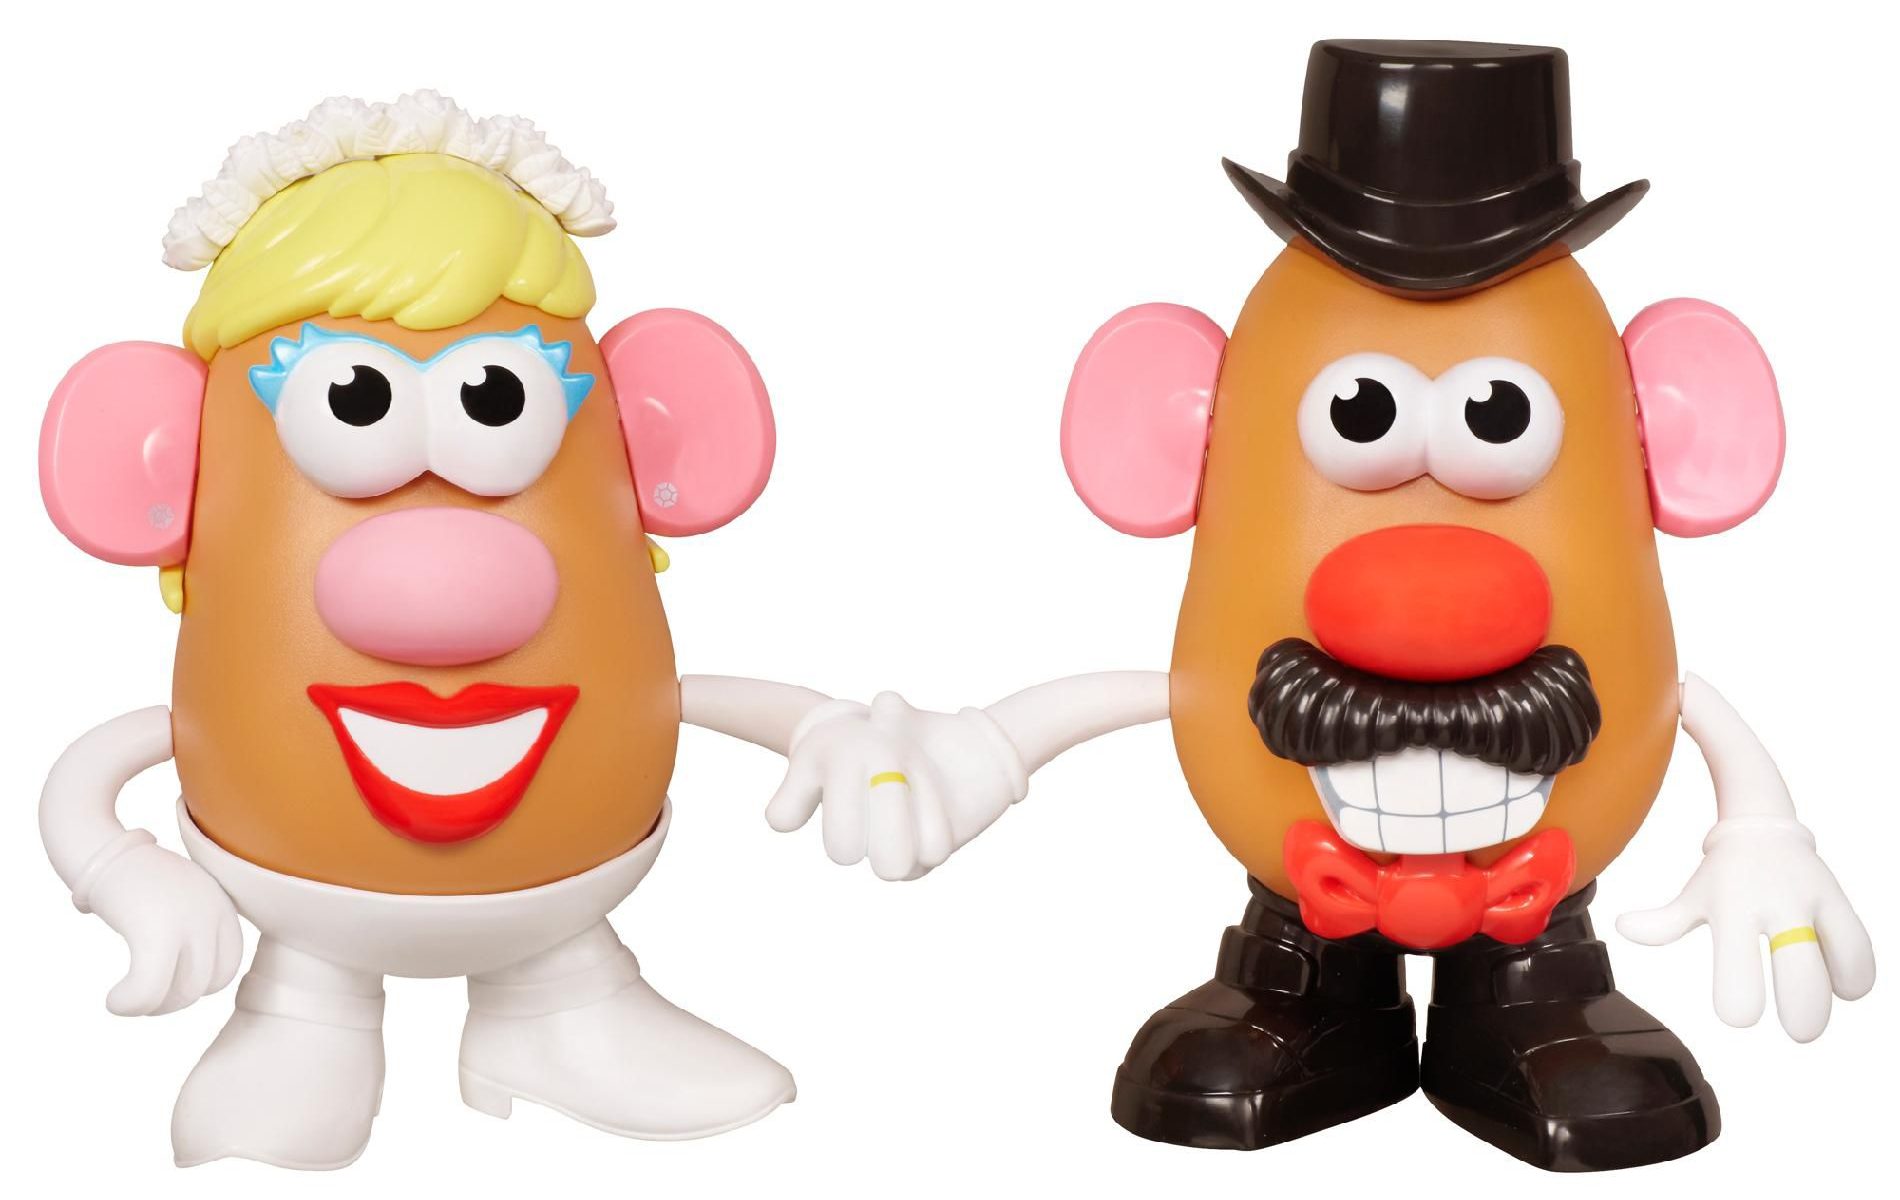 Mr. & Mrs. Potato Head & Accessories